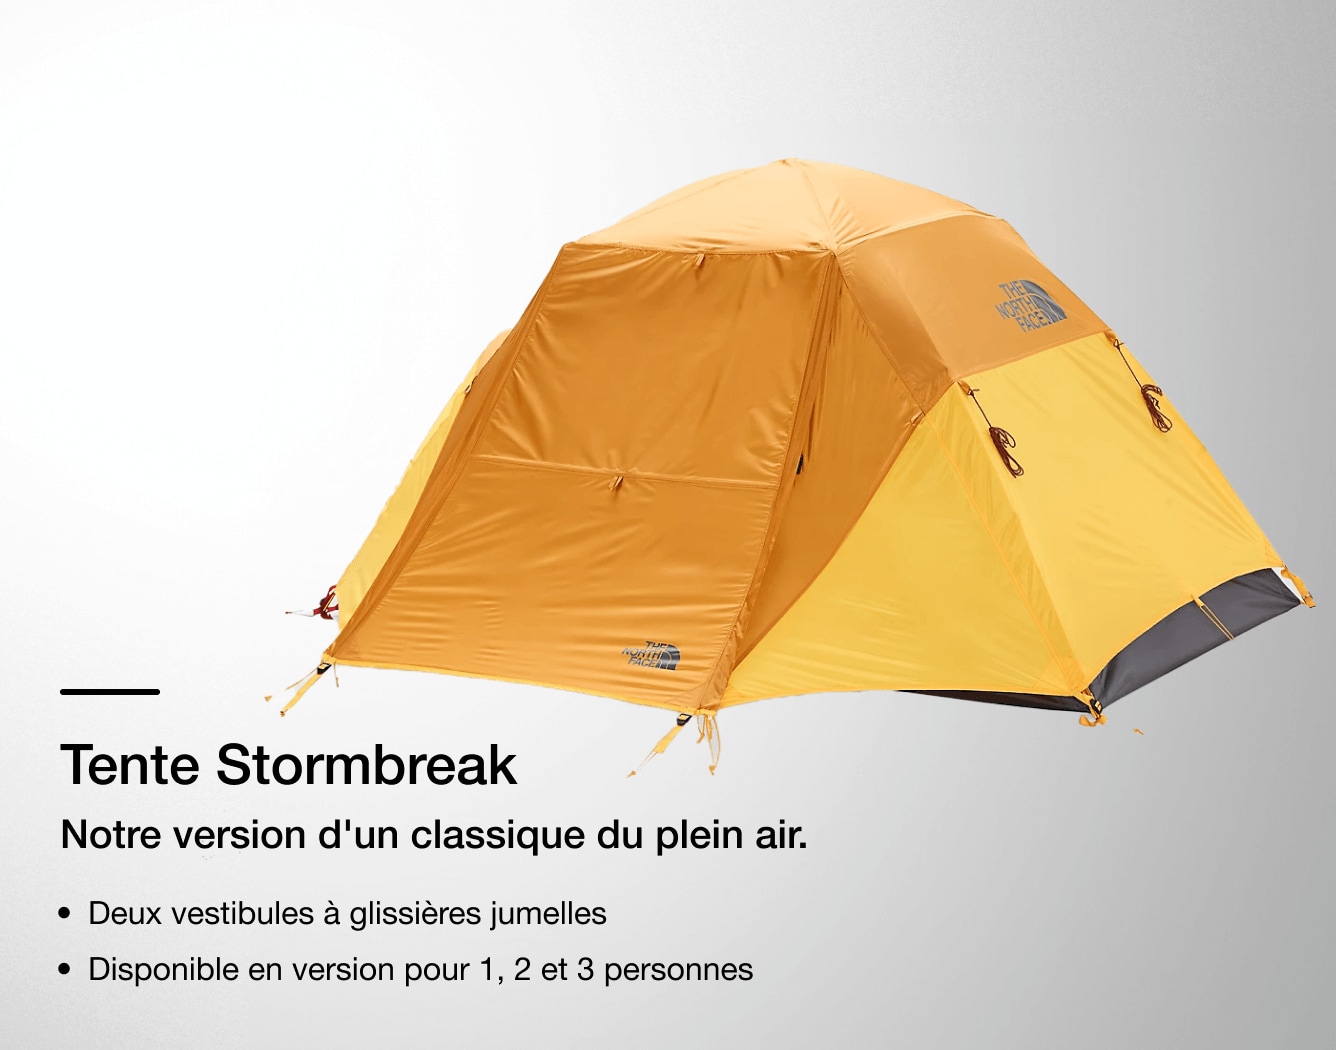 Image de la tente Stormbreak de The North Face avec les caractéristiques indiquées en surimpression. 